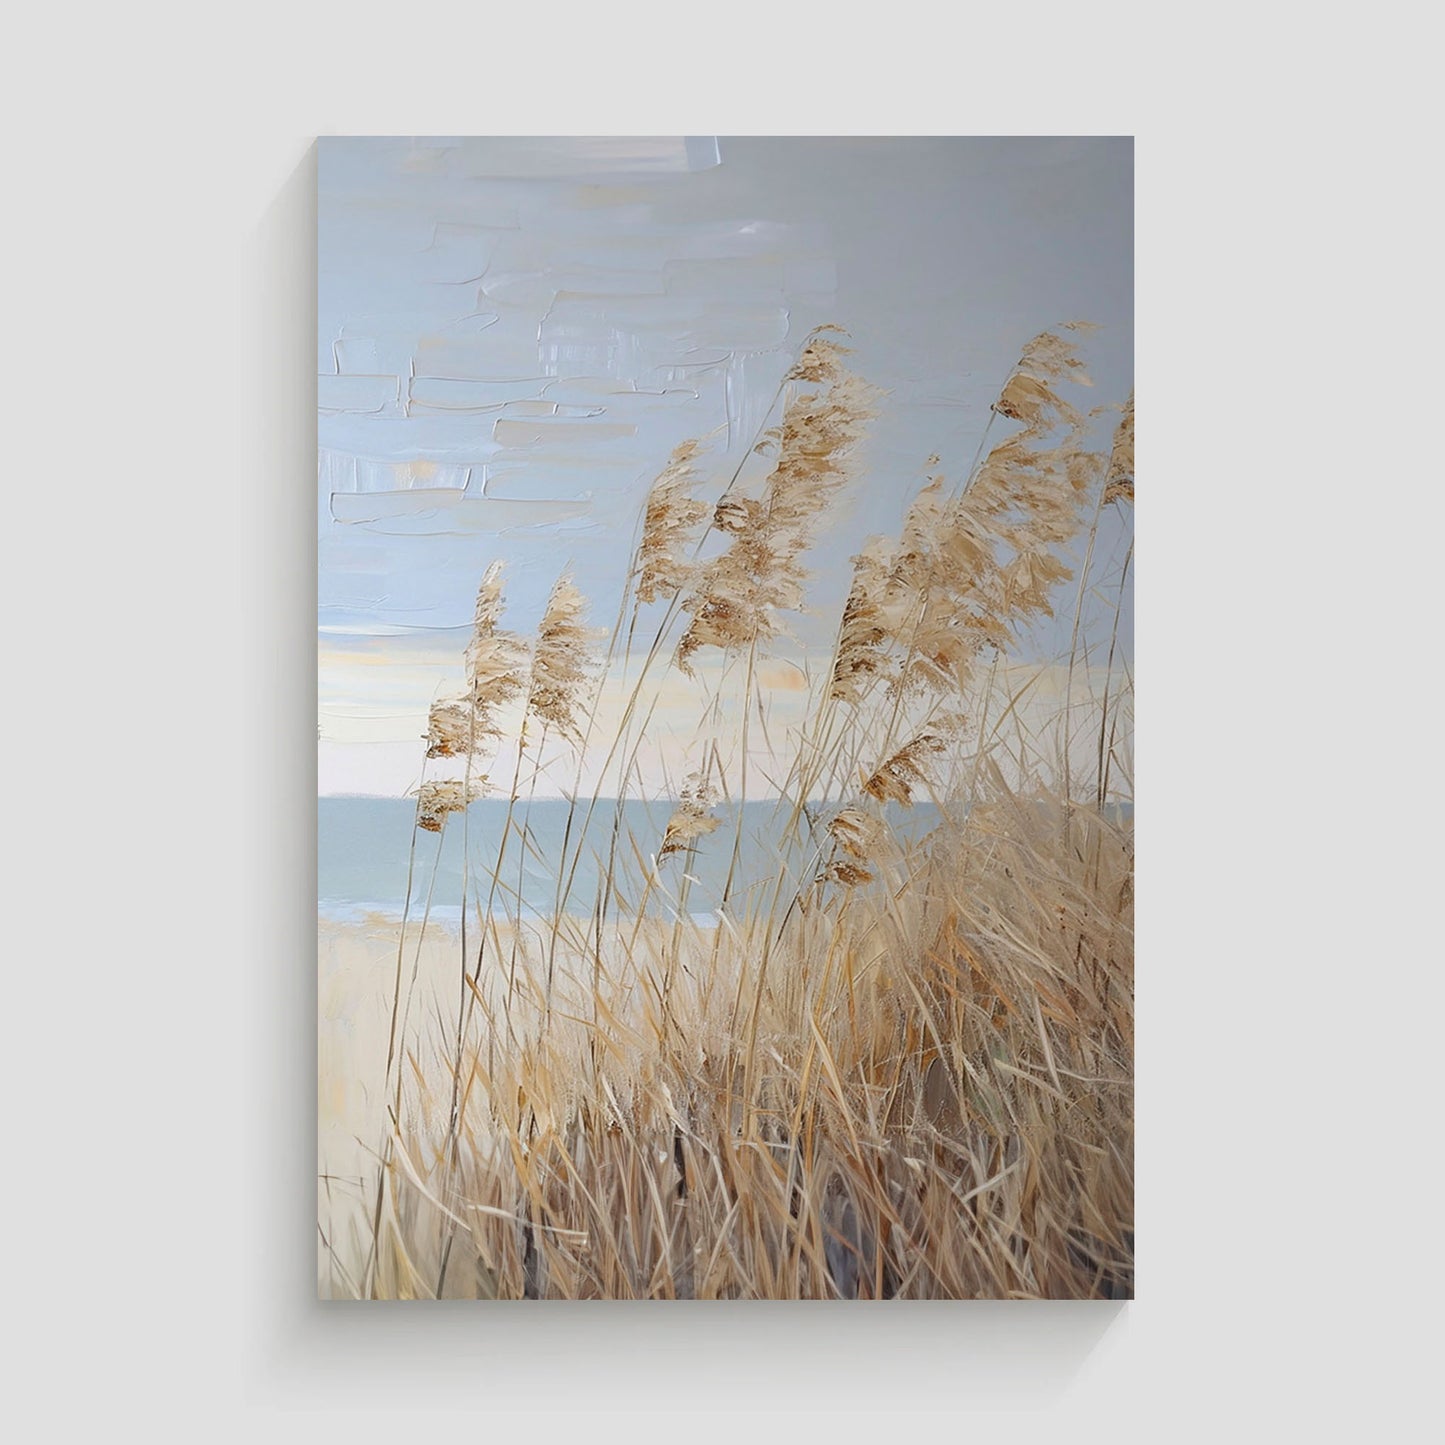 Pintura de una playa con hierba seca meciéndose al viento y un paisaje costero en tonos suaves.